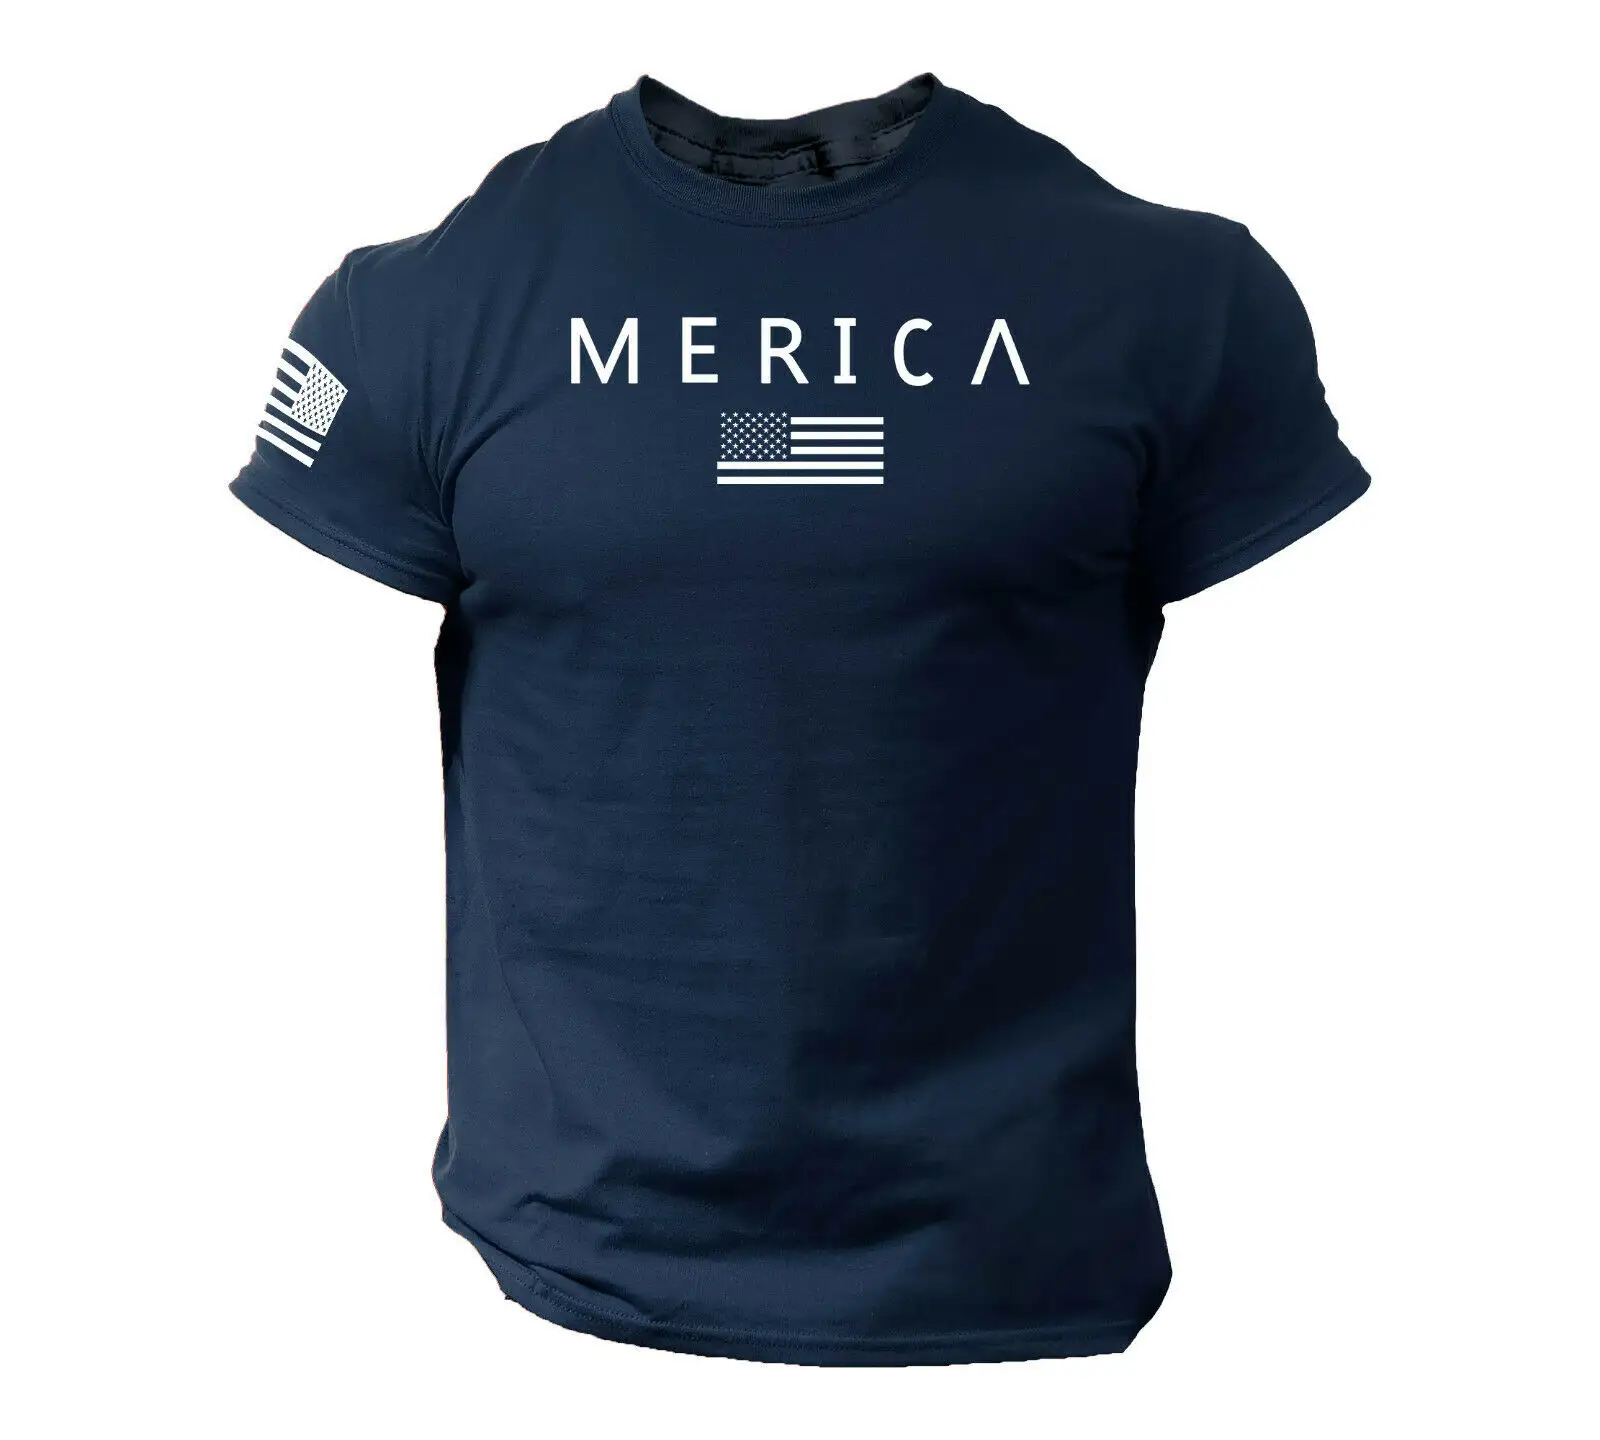 אמריקה צבא סגנון T ארה"ב דגל אמריקאי צבאי אקדח למעלה באיכות גבוהה דיגיטלי מודפס t חולצה